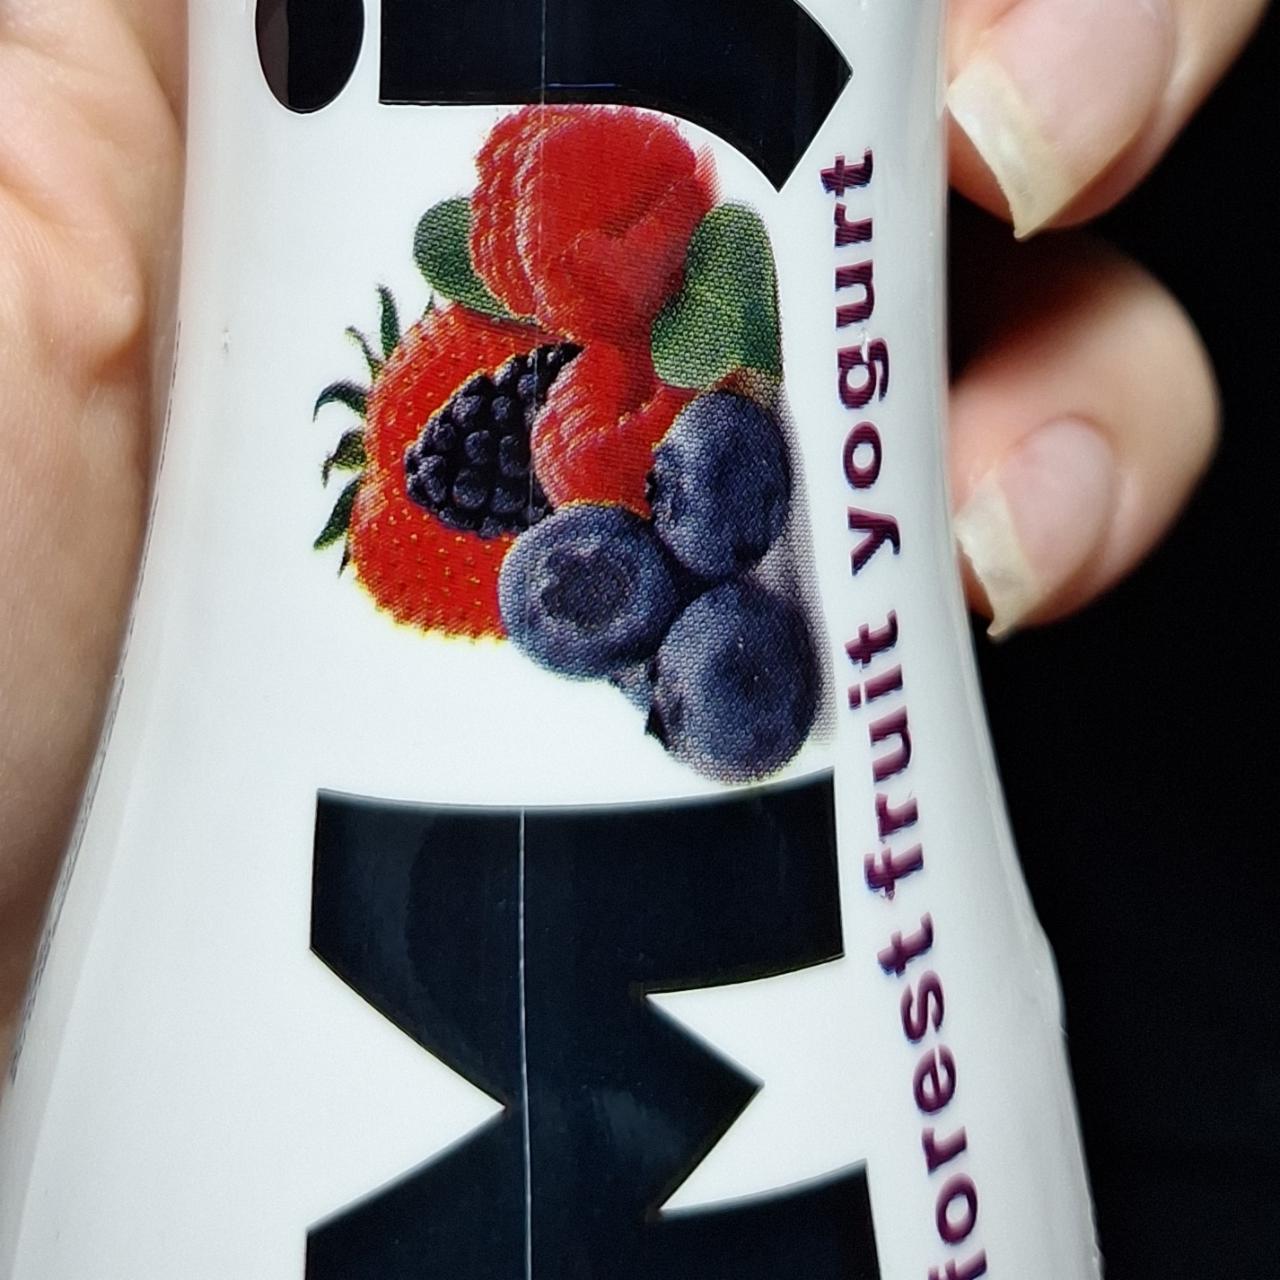 Фото - питьевой йогурт лесные ягоды Mojo